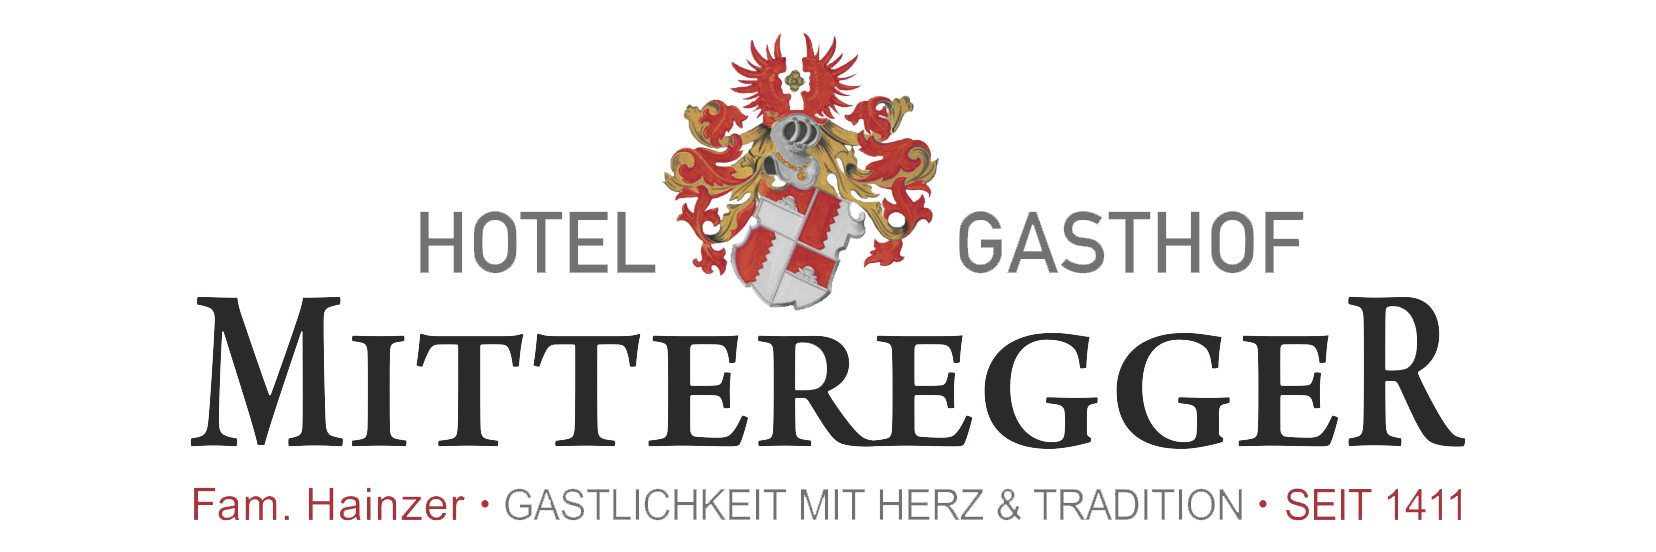 Hotel Mitteregger